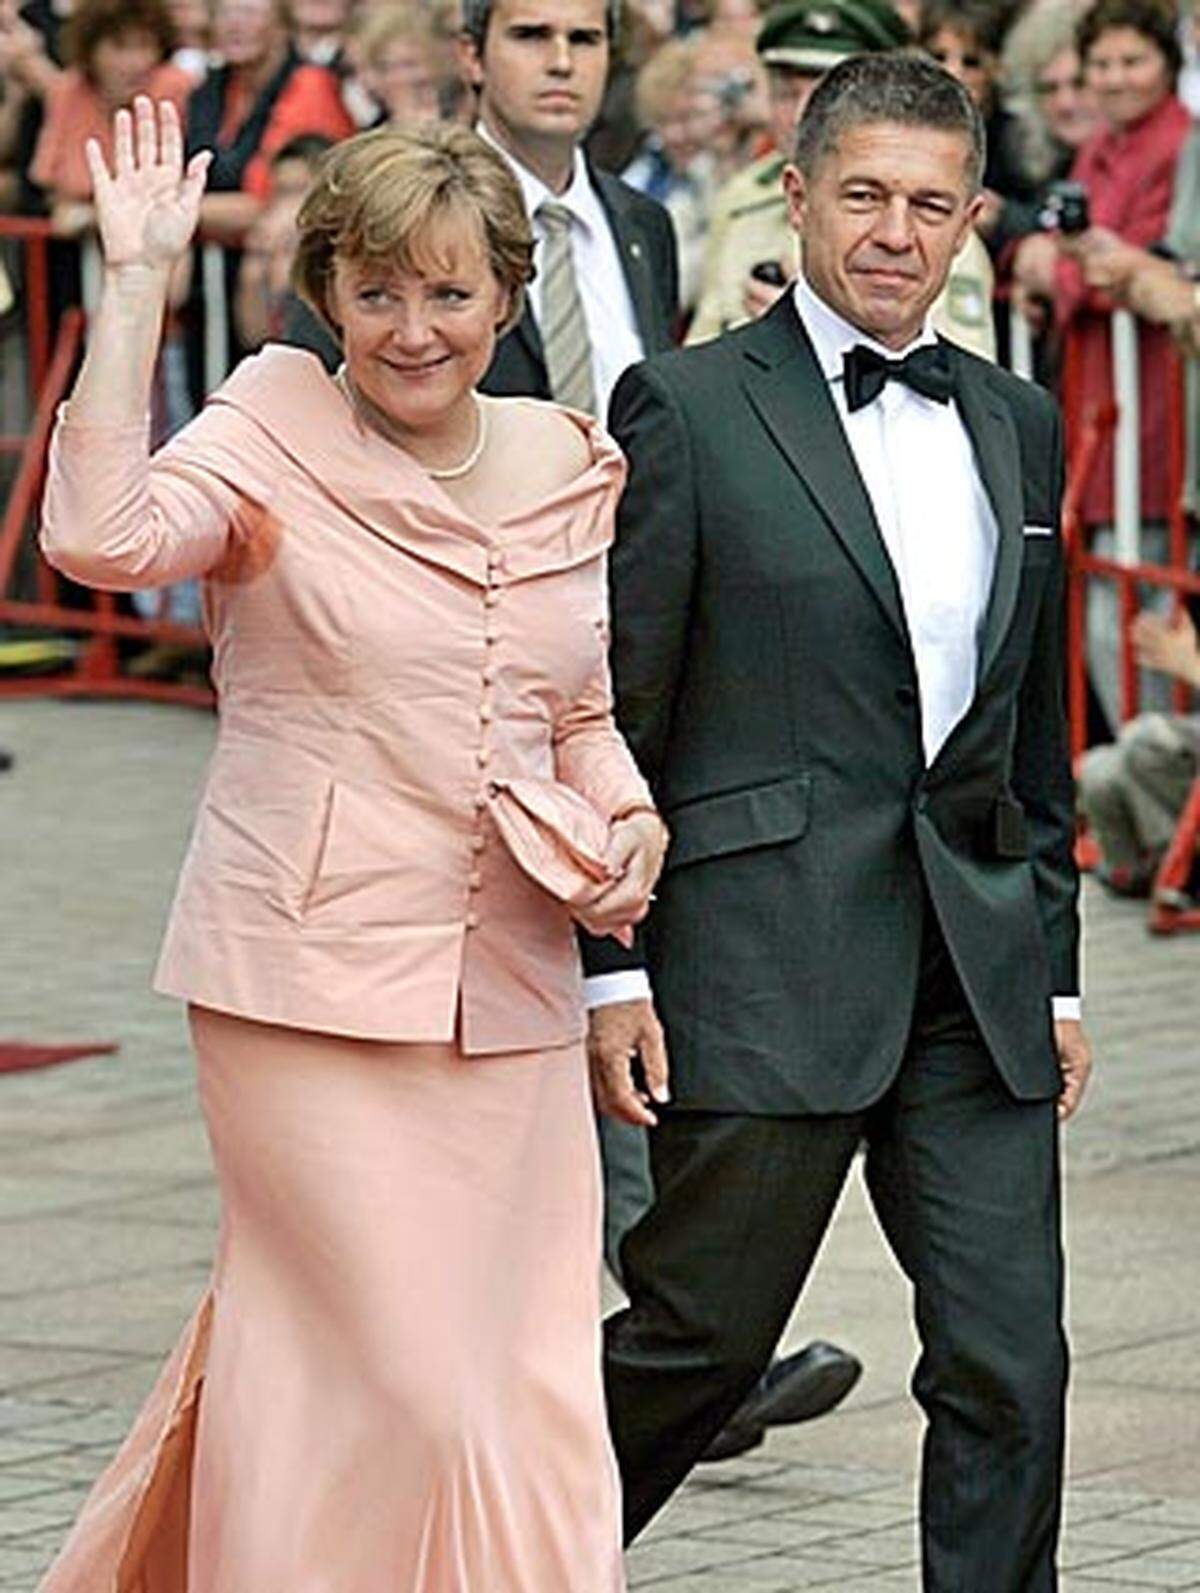 Deutschland hat eine "männliche First Lady": Bundeskanzlerin Angela Merkel ist seit 1998 mit dem Chemiker Joachim Sauer verheiratet. Sauer tritt selten in der Öffentlichkeit auf, er ist kein Fan des Repräsentierens. Was seine politischen Ambitionen angeht, gilt er als interessiert. Angela Merkel nimmt seine politische Meinung ernst, in der Öffentlichkeit äußert sich Sauer jedoch nicht dazu.